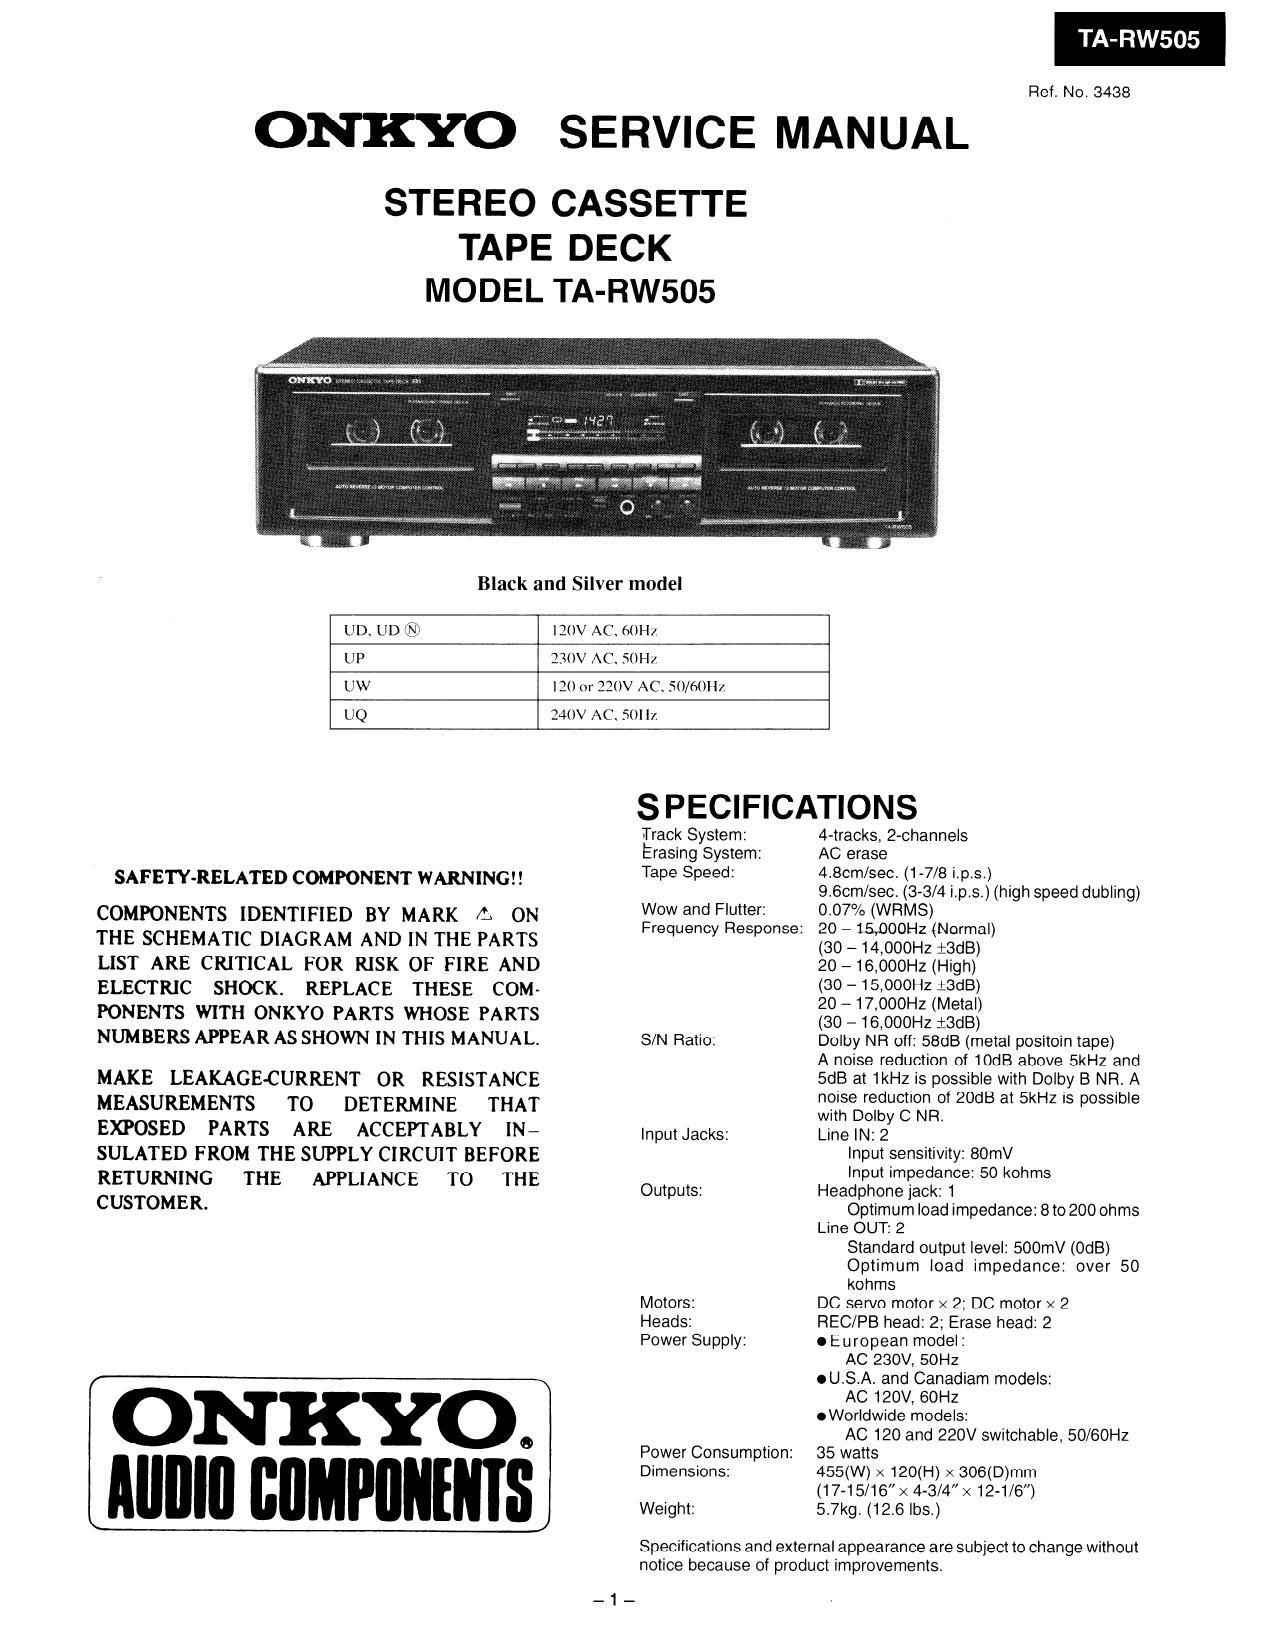 Onkyo TARW 505 Service Manual